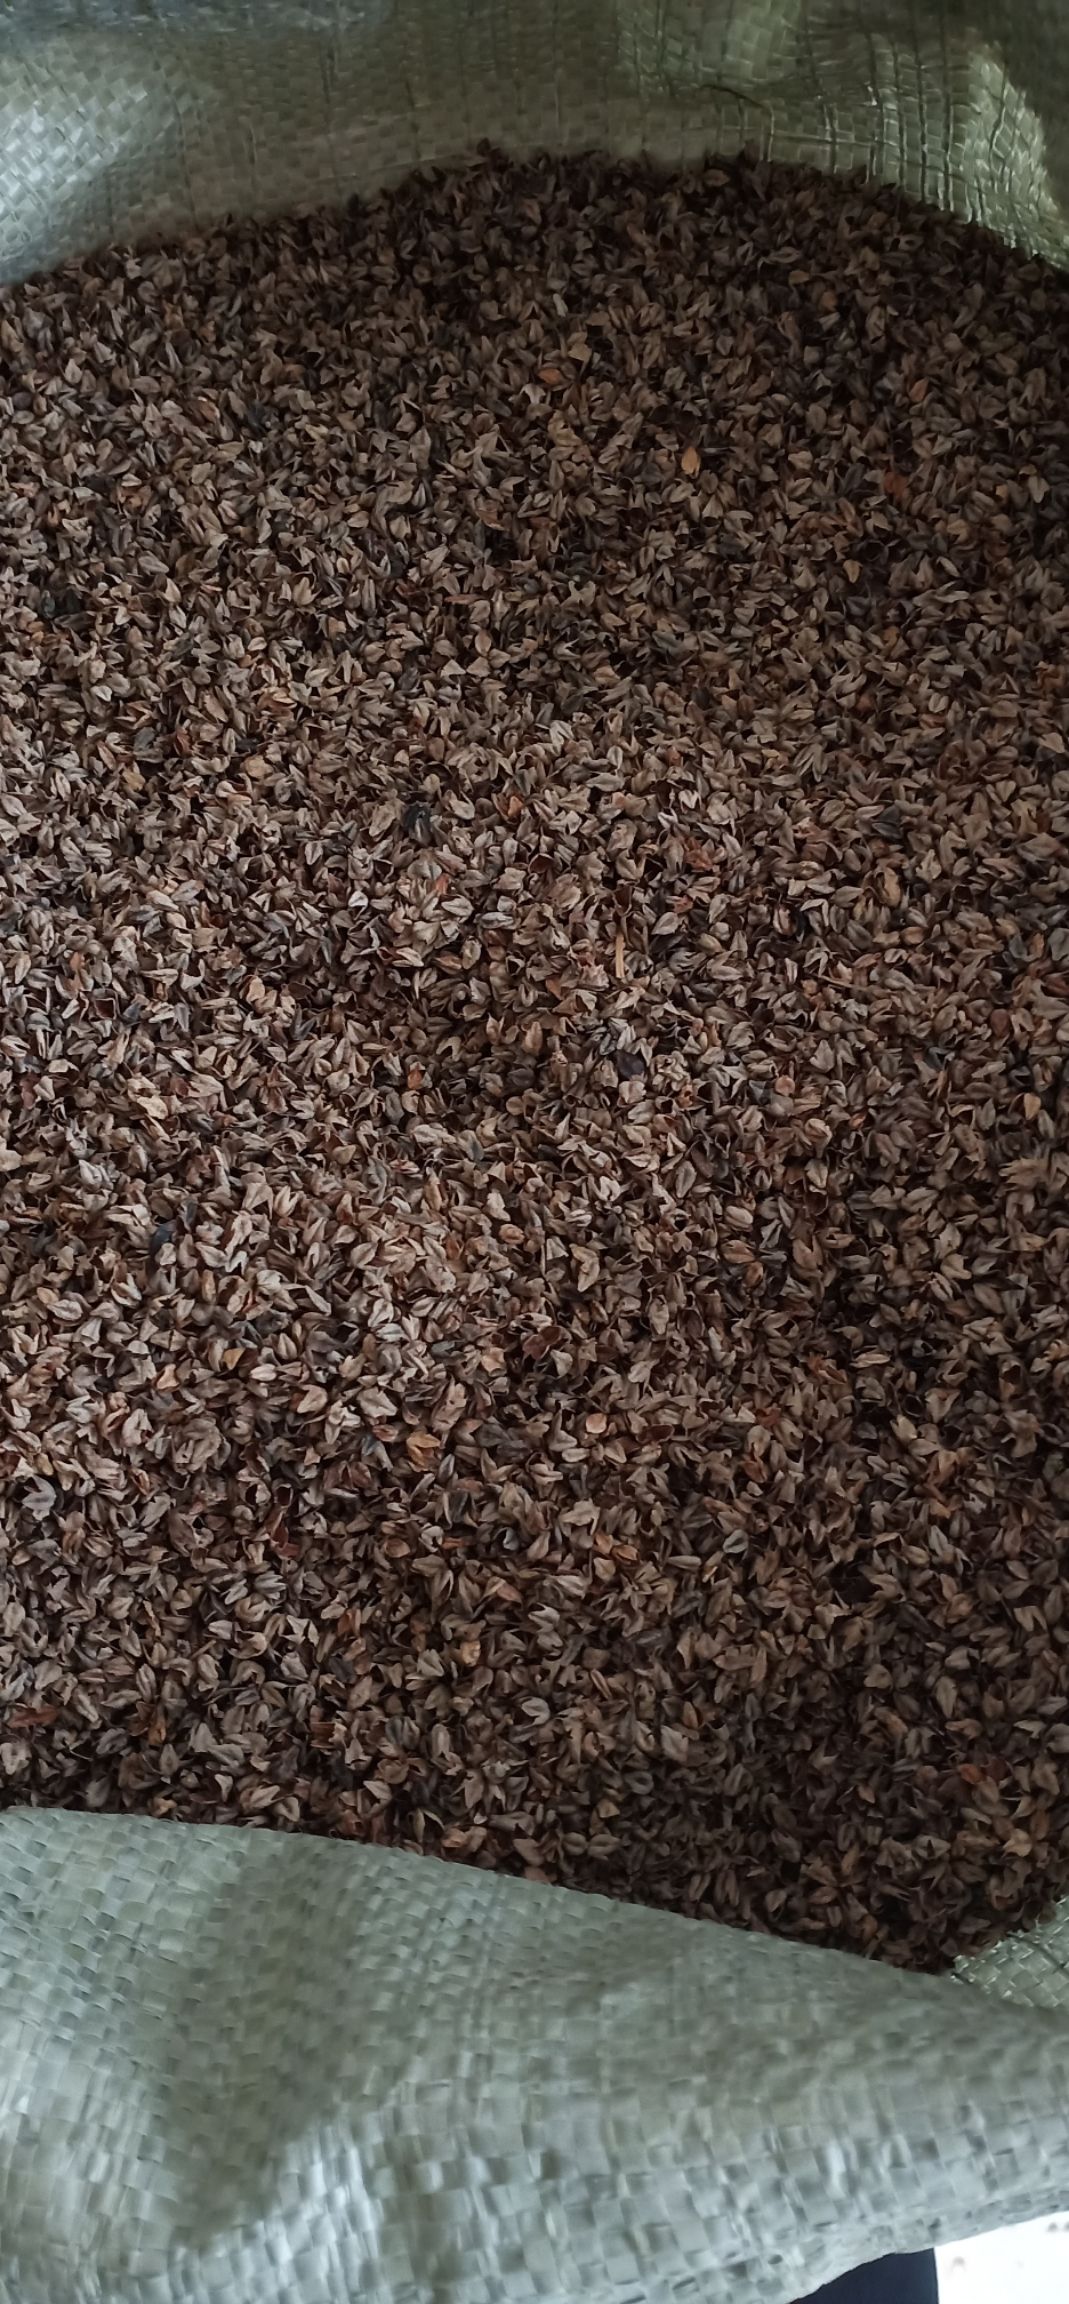 [荞麦壳批发]荞麦壳价格1.5元/斤 - 惠农网